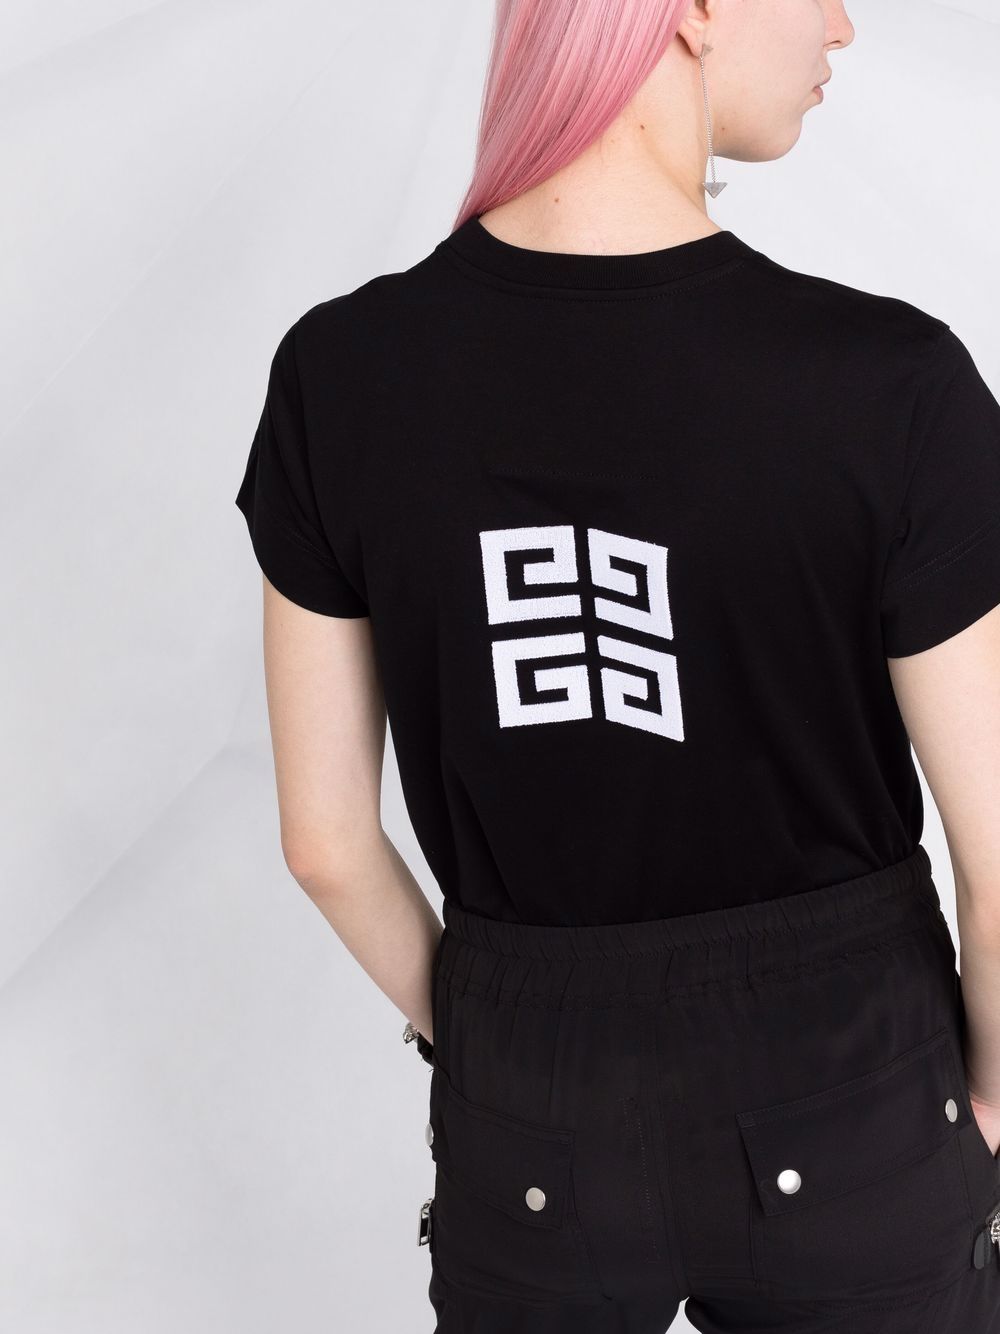 T-shirt in cotone bianco/nero con stampa logo<br><br><br>